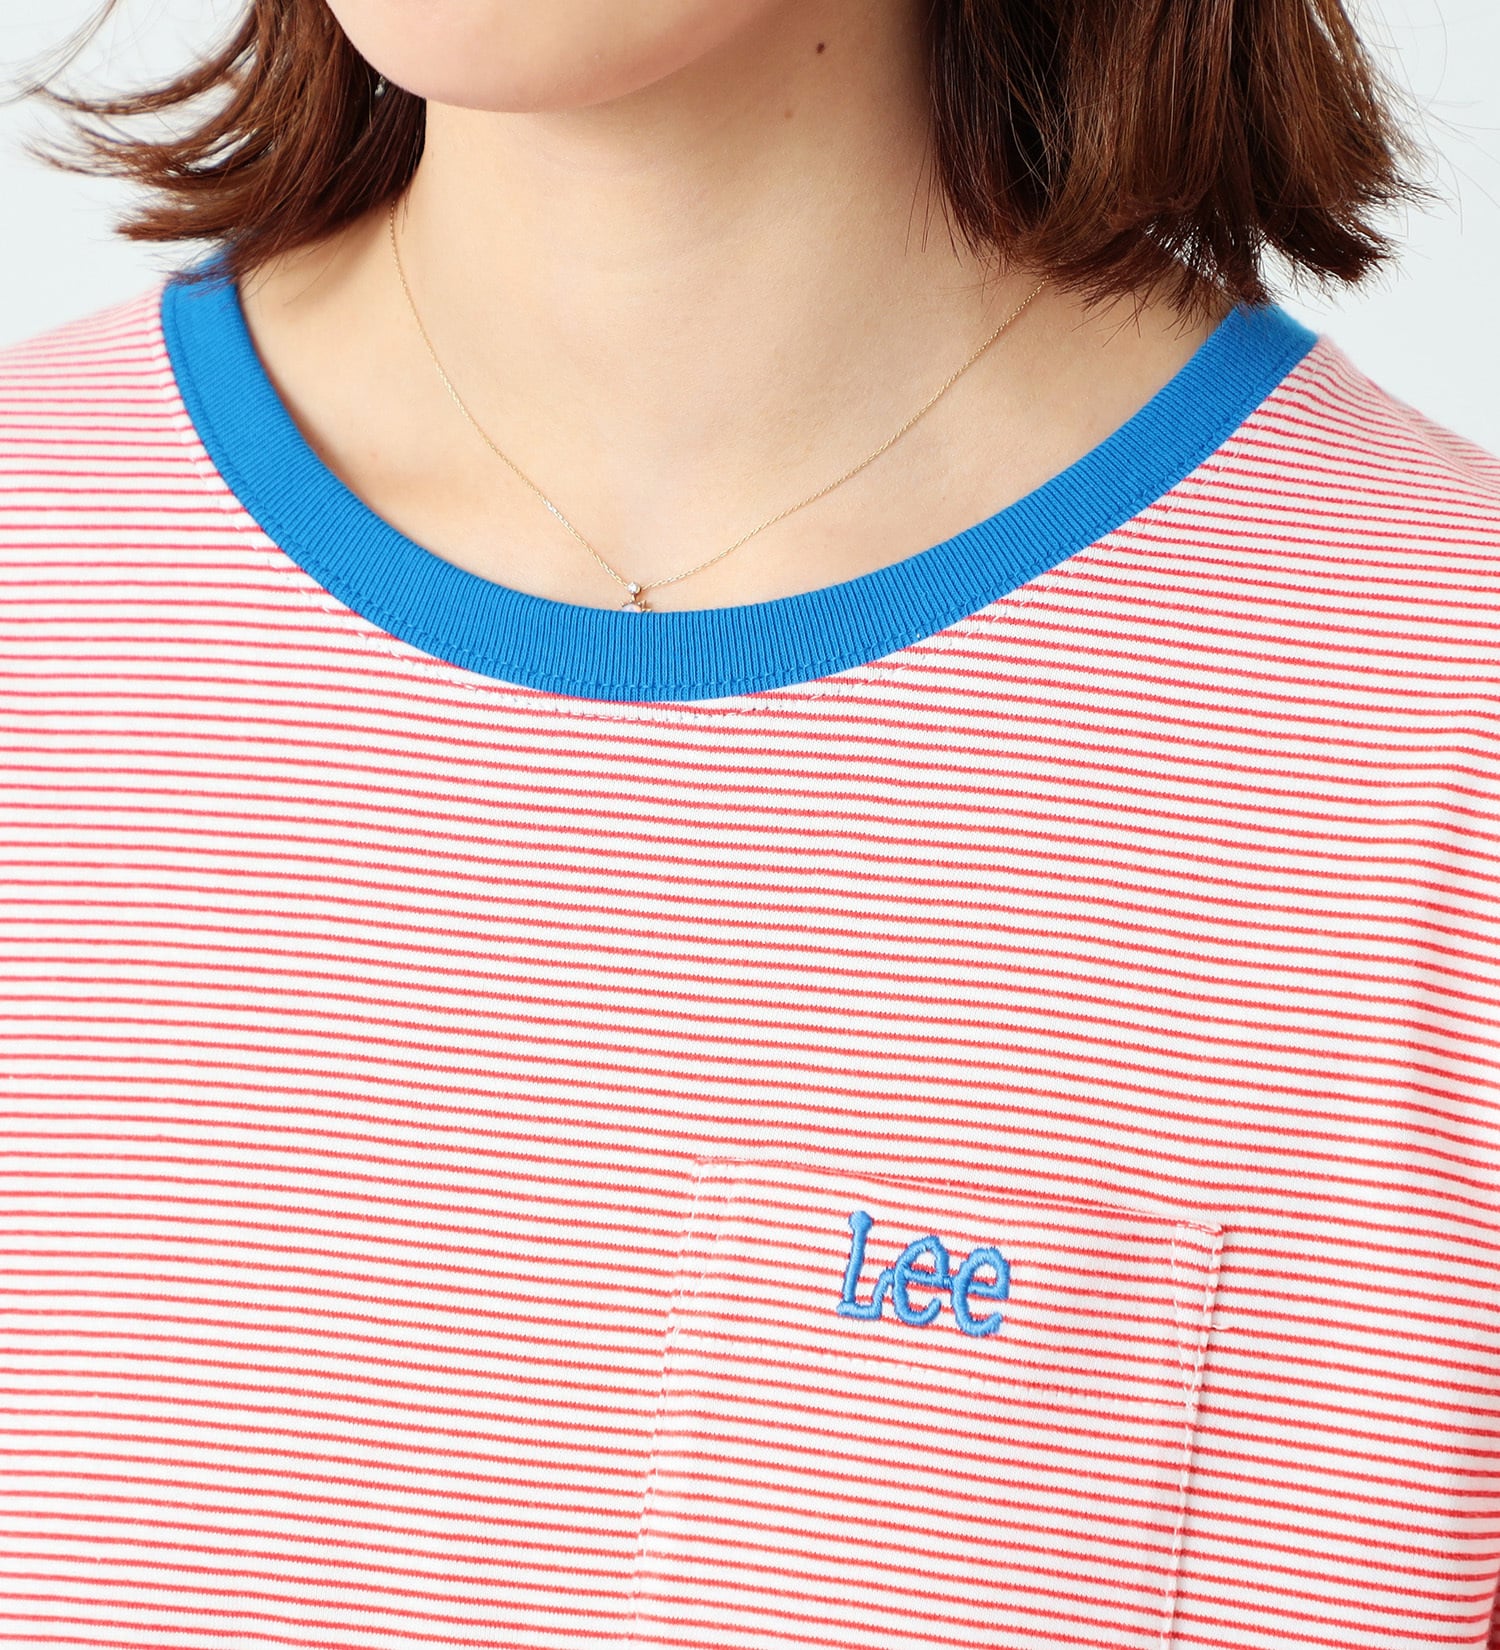 Lee(リー)の【FINAL SALE】ポケットロゴ刺繍 ハーフスリーブTee|トップス/Tシャツ/カットソー/レディース|ホワイトxレッド